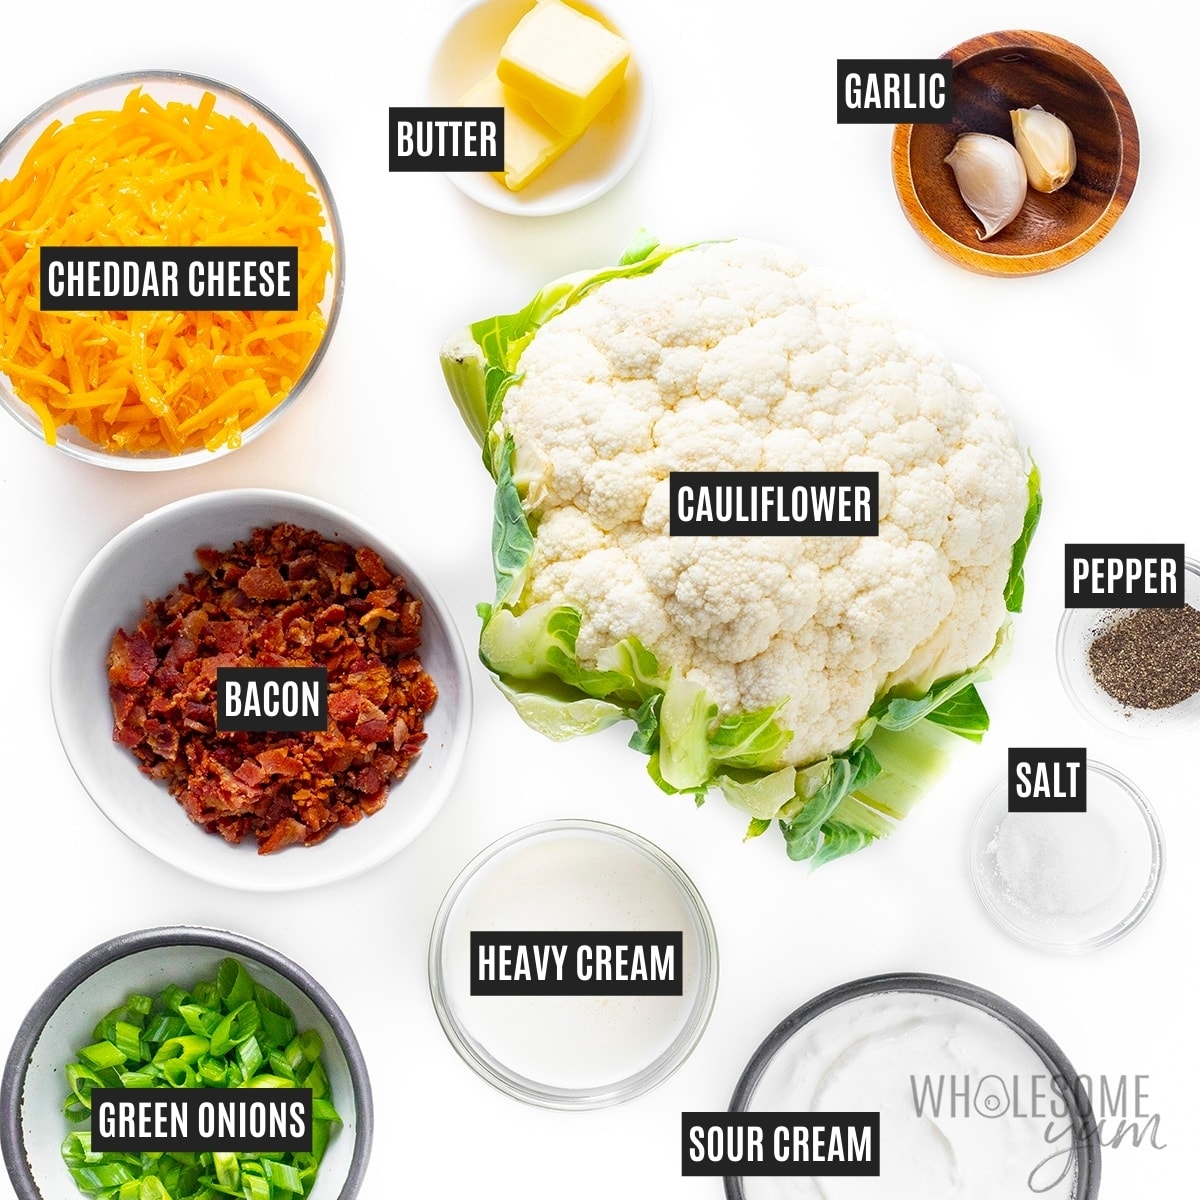 Cauliflower casserole recipe ingredients.